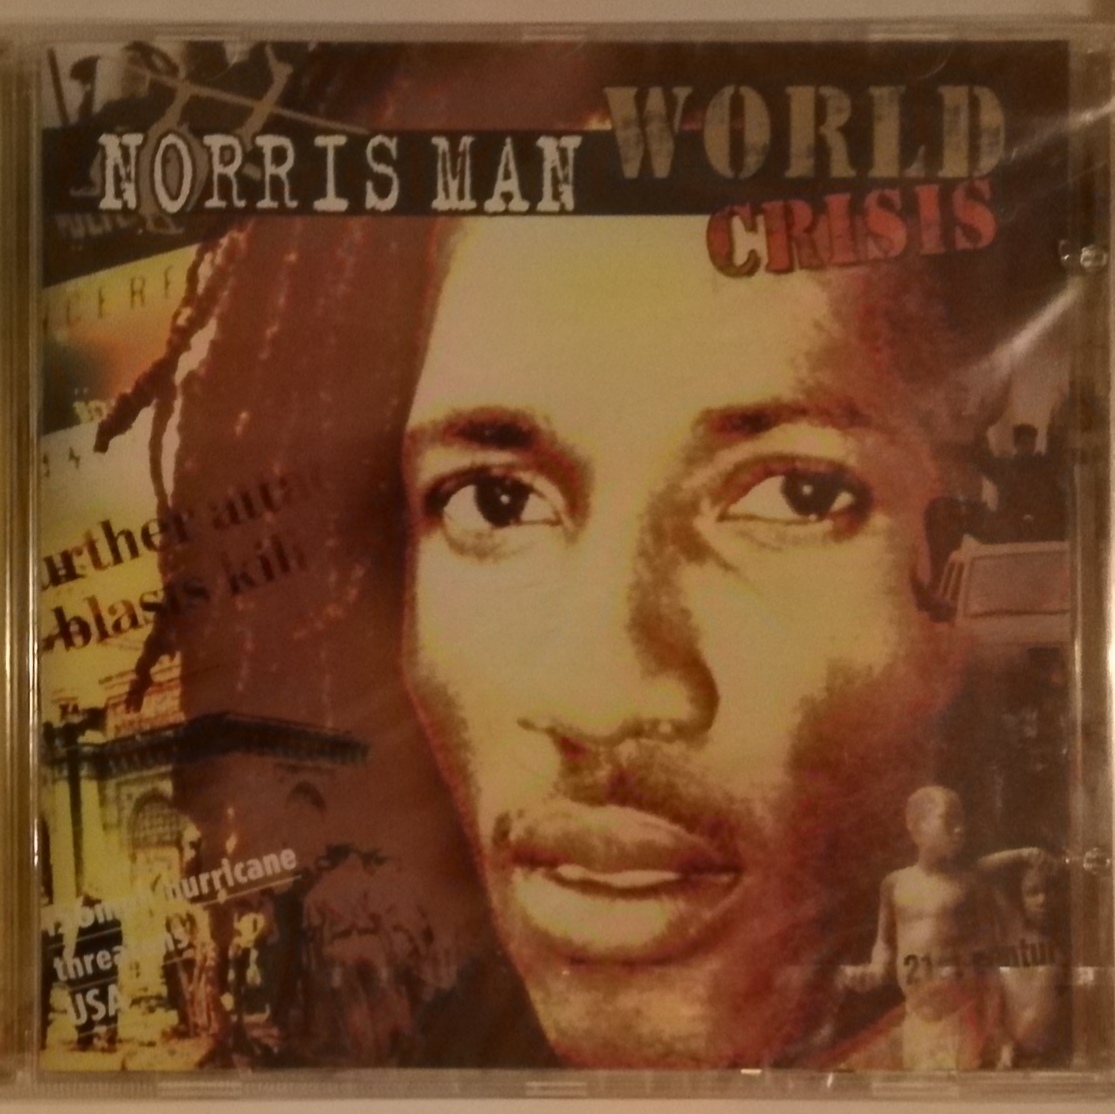 CD NORRIS MAN - WORLD CRISIS